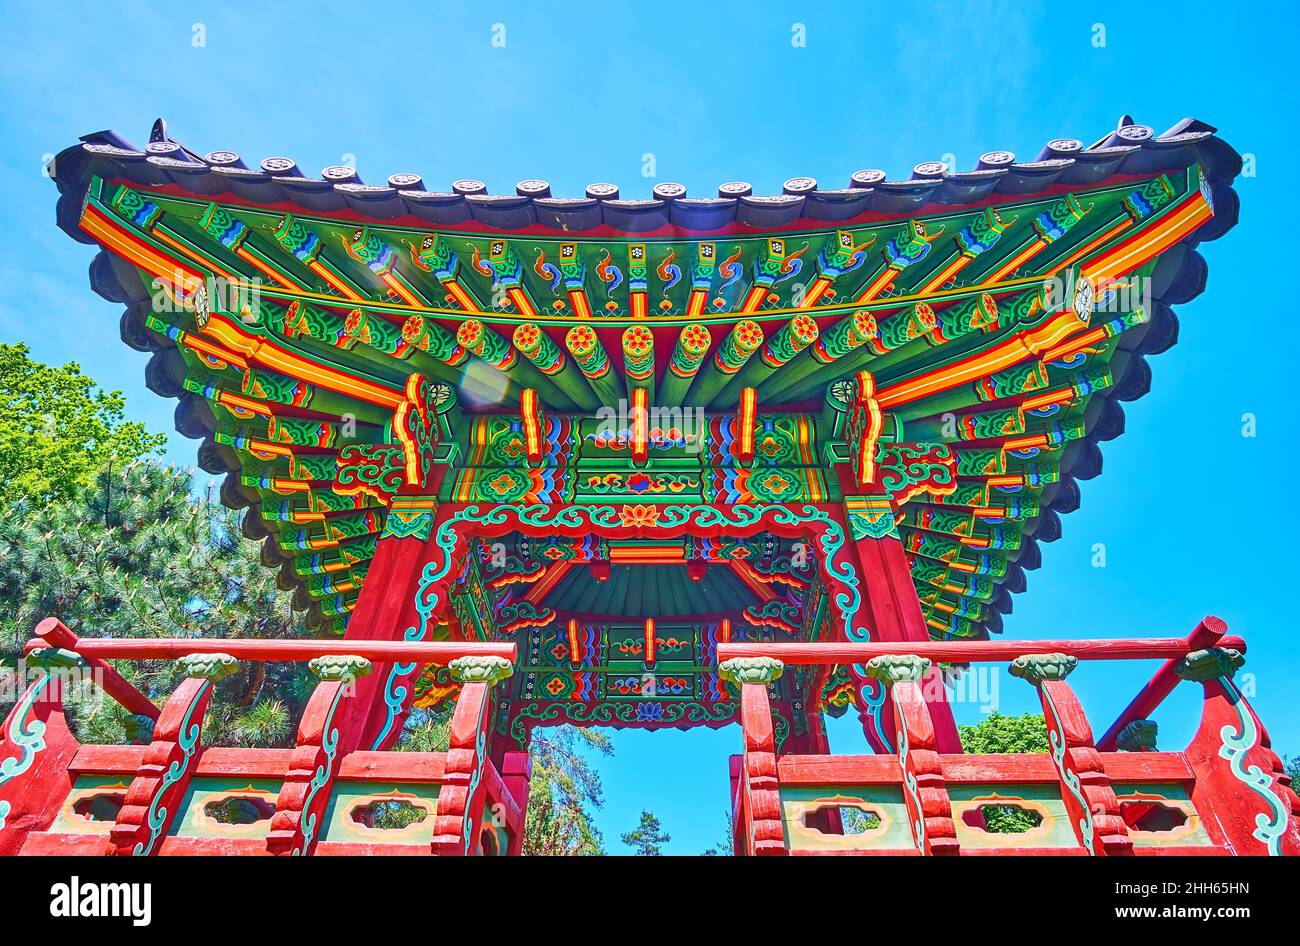 Les détails décoratifs en bois sculpté et peint de la pagode coréenne, située dans le jardin traditionnel coréen, jardin botanique de Kiev, Ukraine Banque D'Images